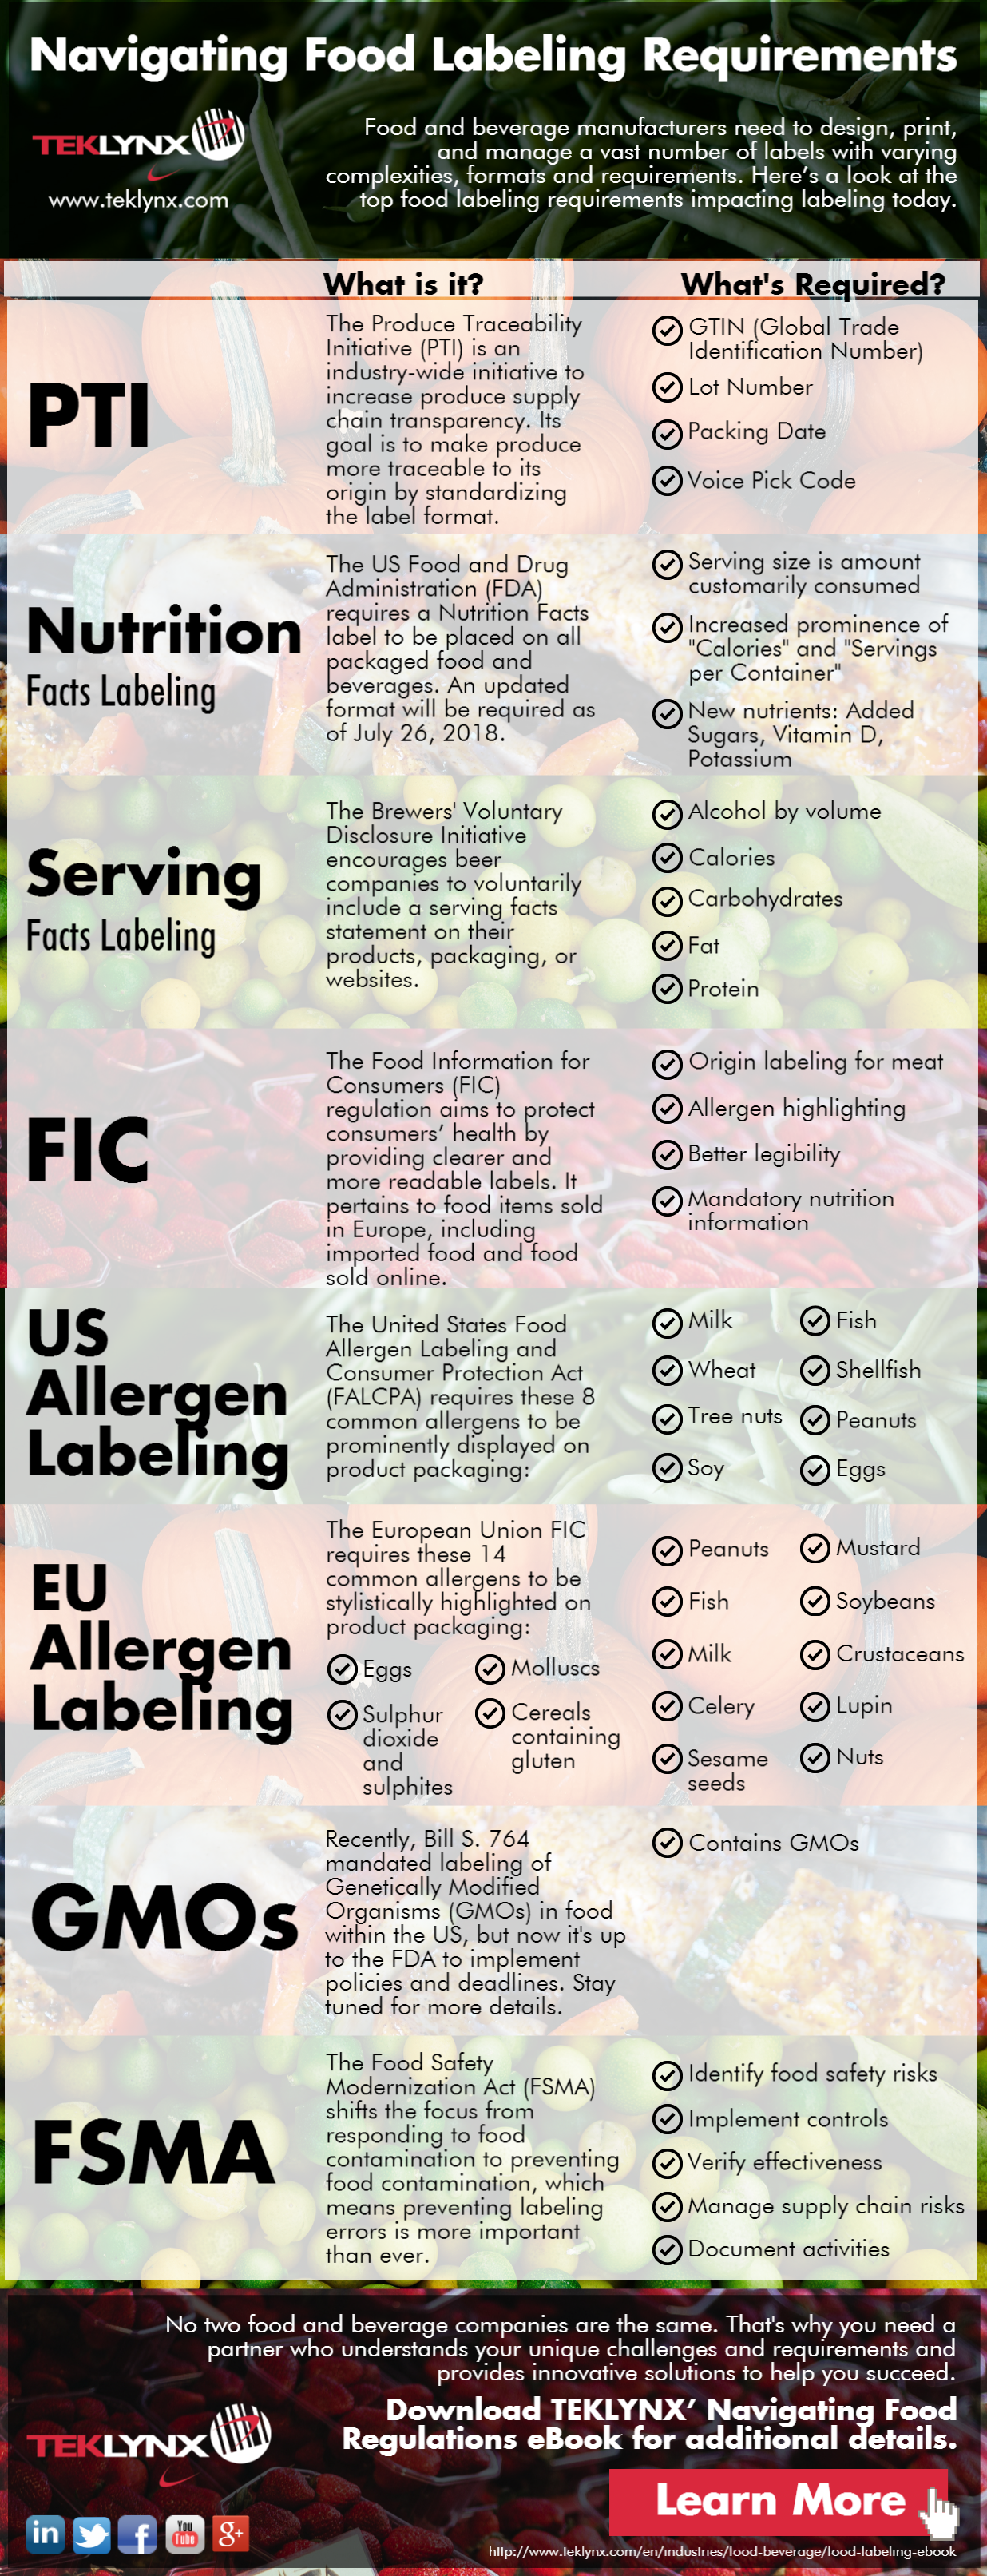 Bảng thông tin: Đáp ứng các yêu cầu về ghi nhãn mác thực phẩm